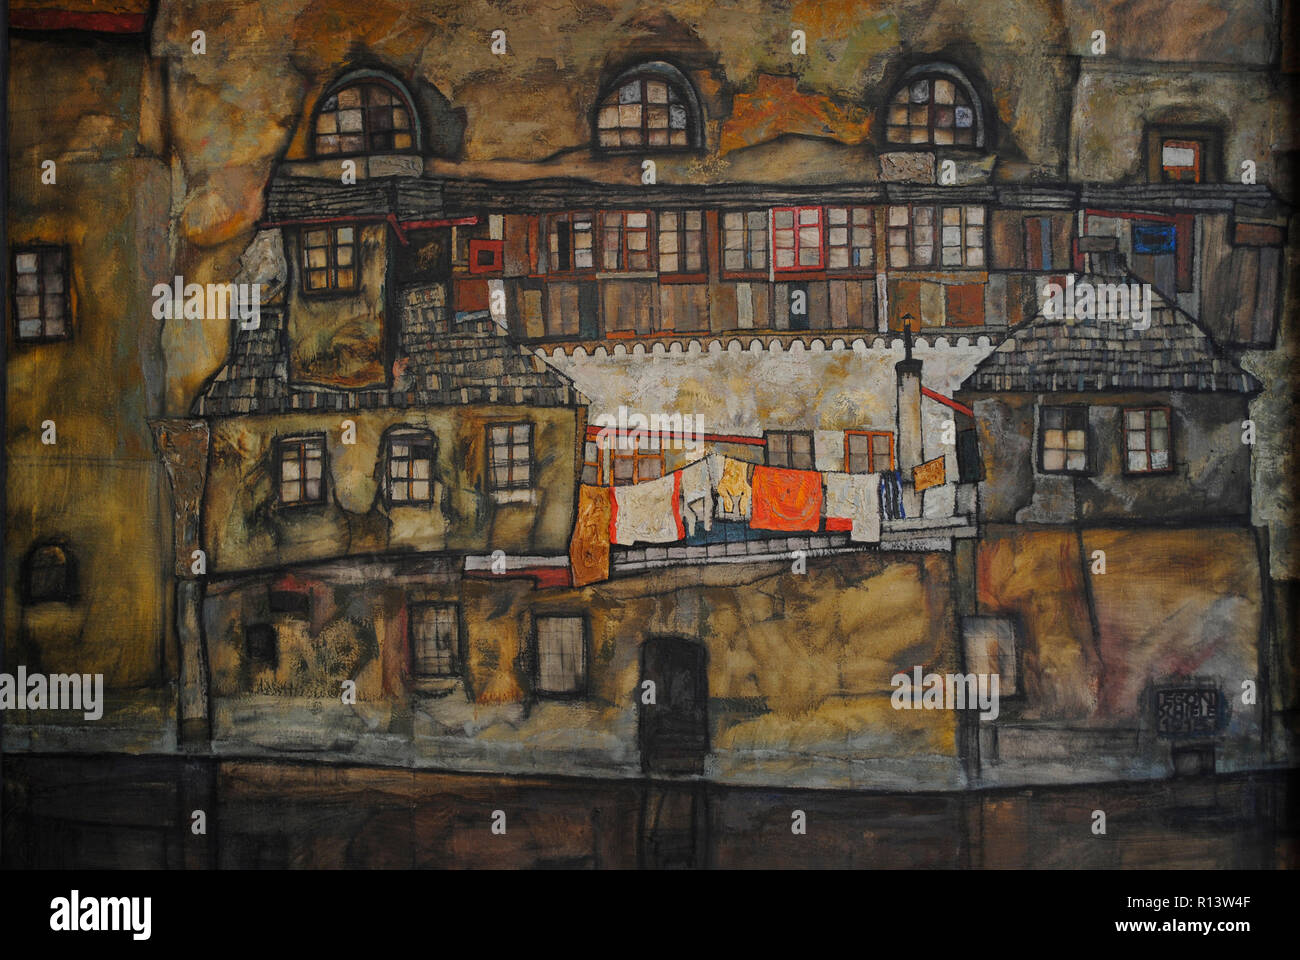 Egon Schiele (Tulln, 1890-Vienne, 1918). Peintre expressionniste autrichien. Mur de la maison sur la rivière, 1915. Huile sur toile. Musée Leopold. Vienne, Autriche. Banque D'Images